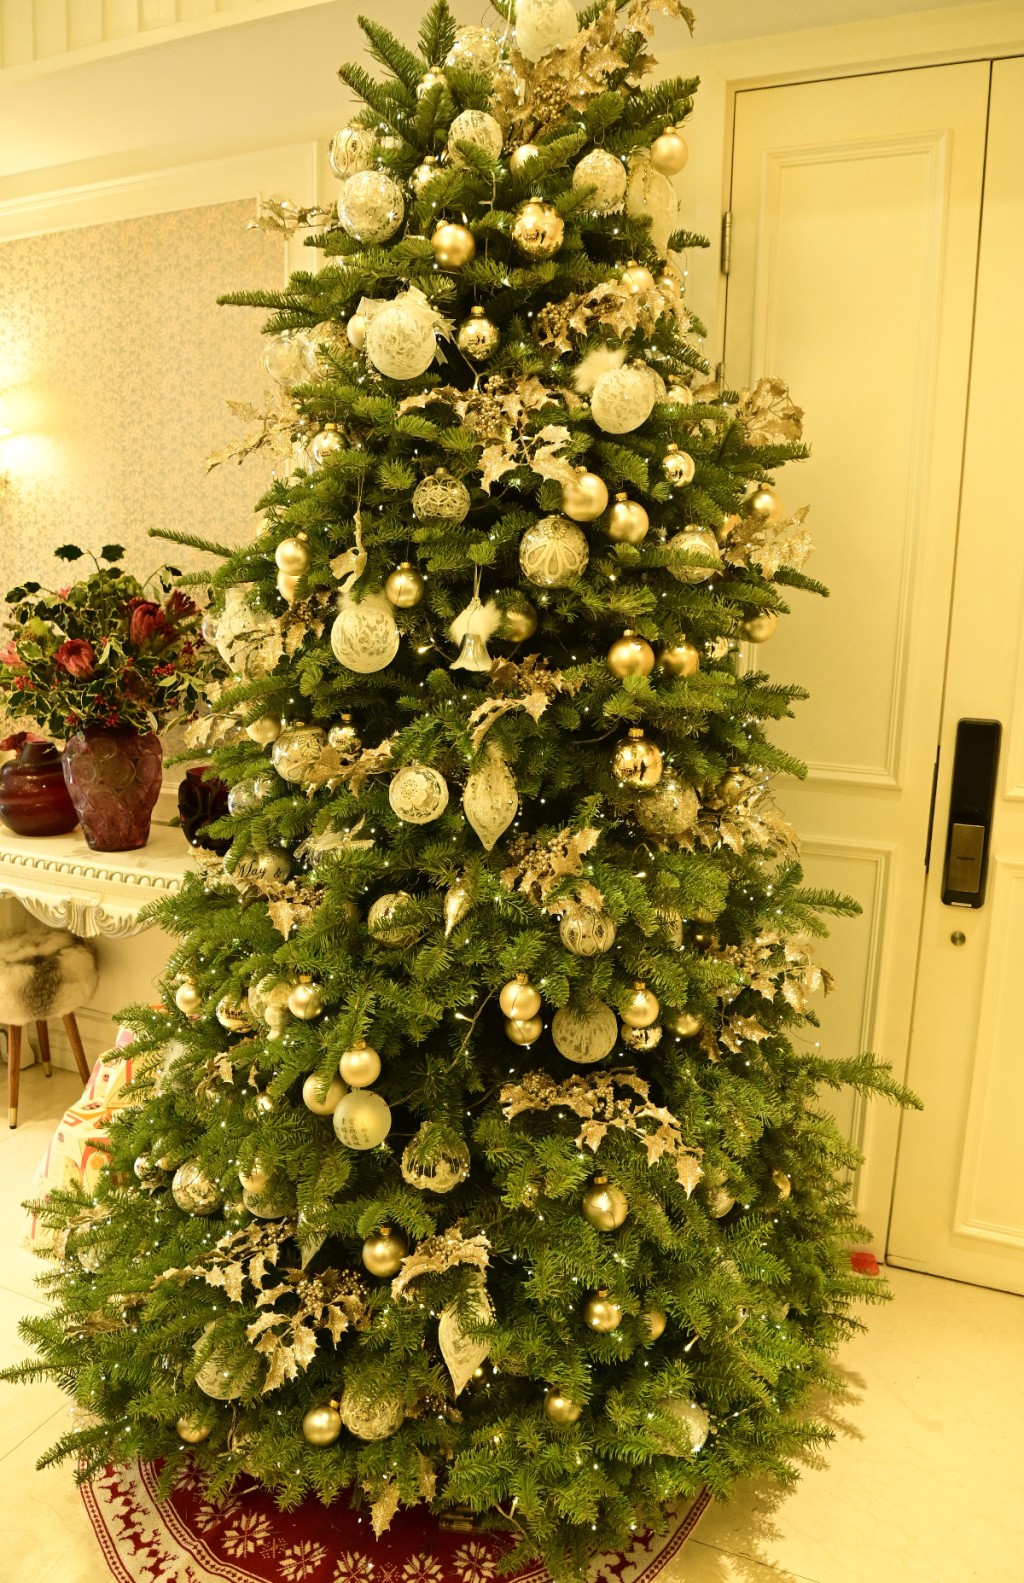 王玉环家中的圣诞树高逾2米。